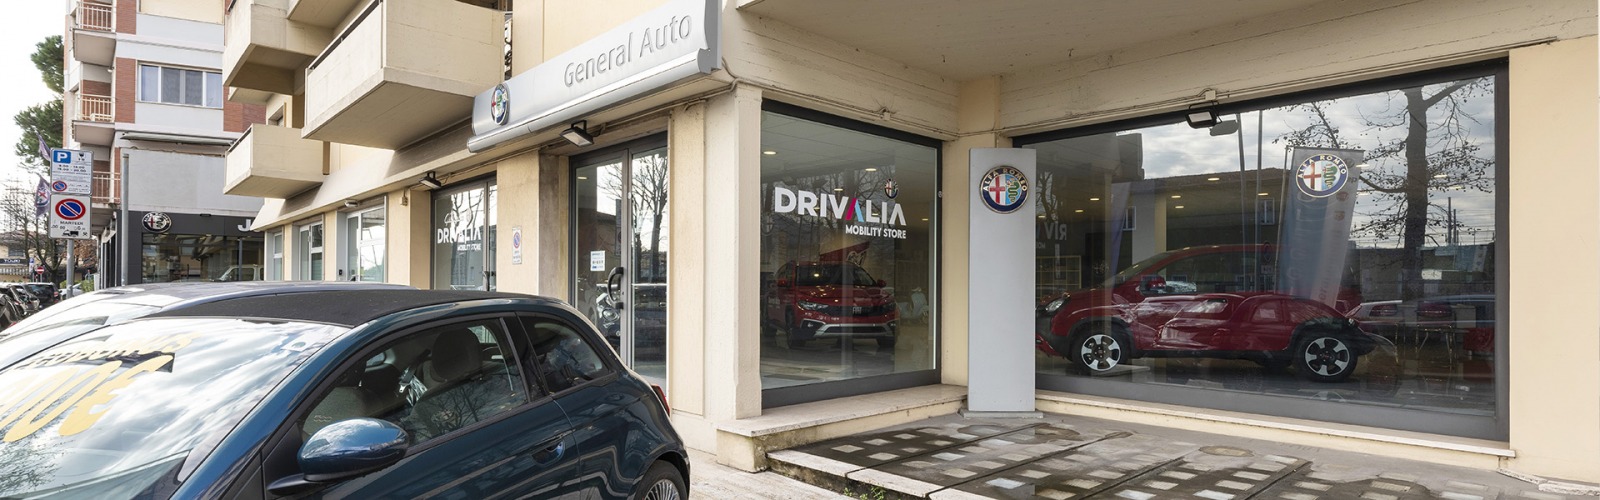 Drivalia Viareggio - General Auto Srl